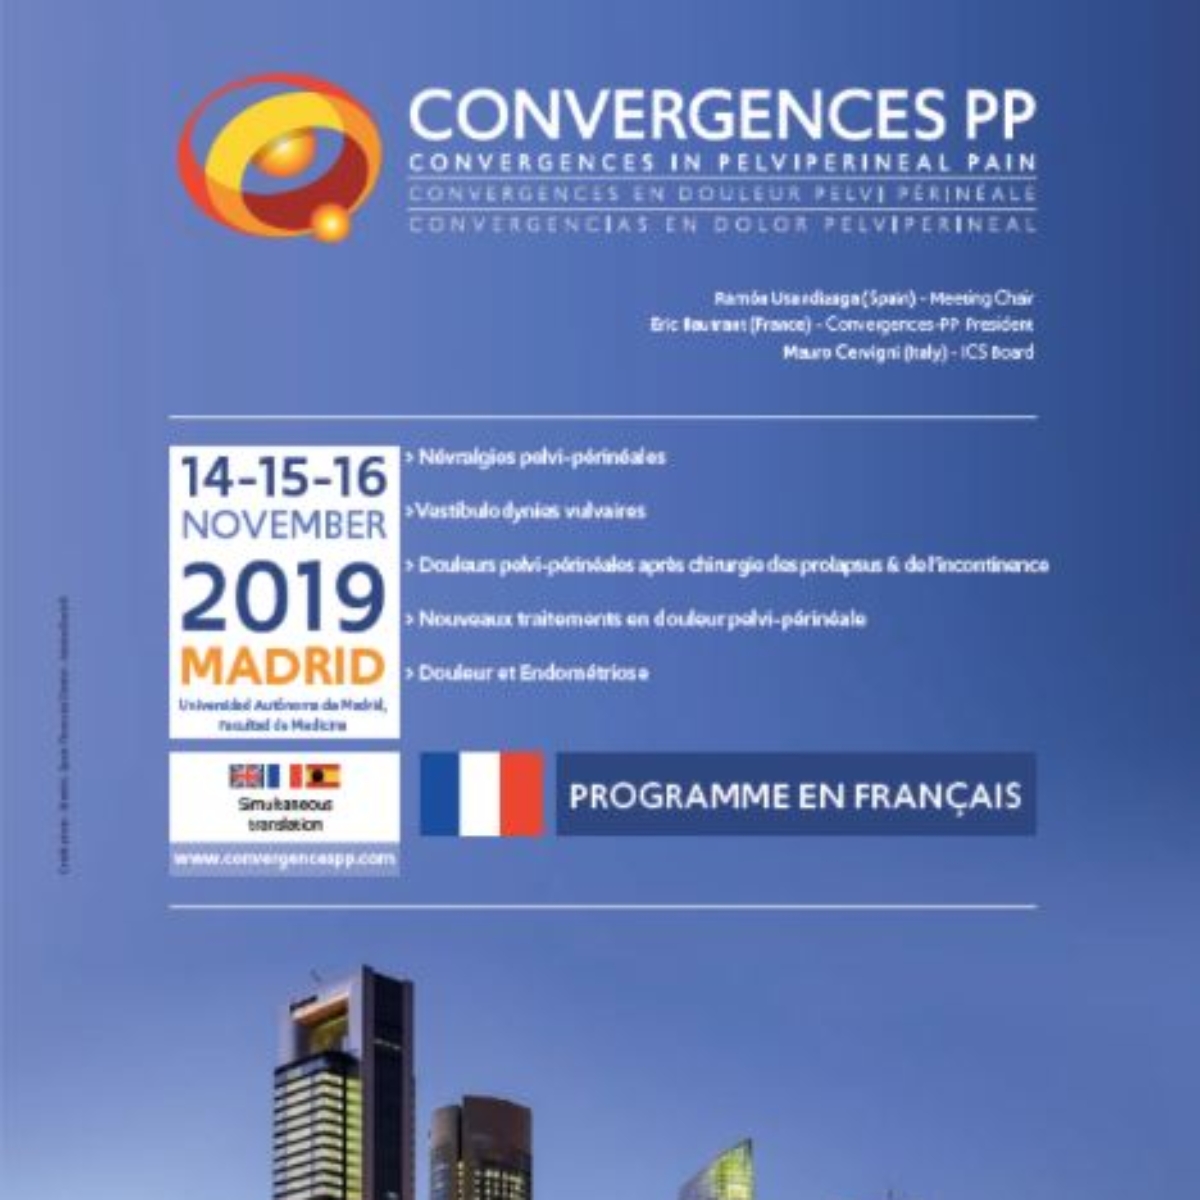 Congrès Convergences in Pelviperineal Pain 2019 en Espagne Présidé par le Dr E. Bautrant 1